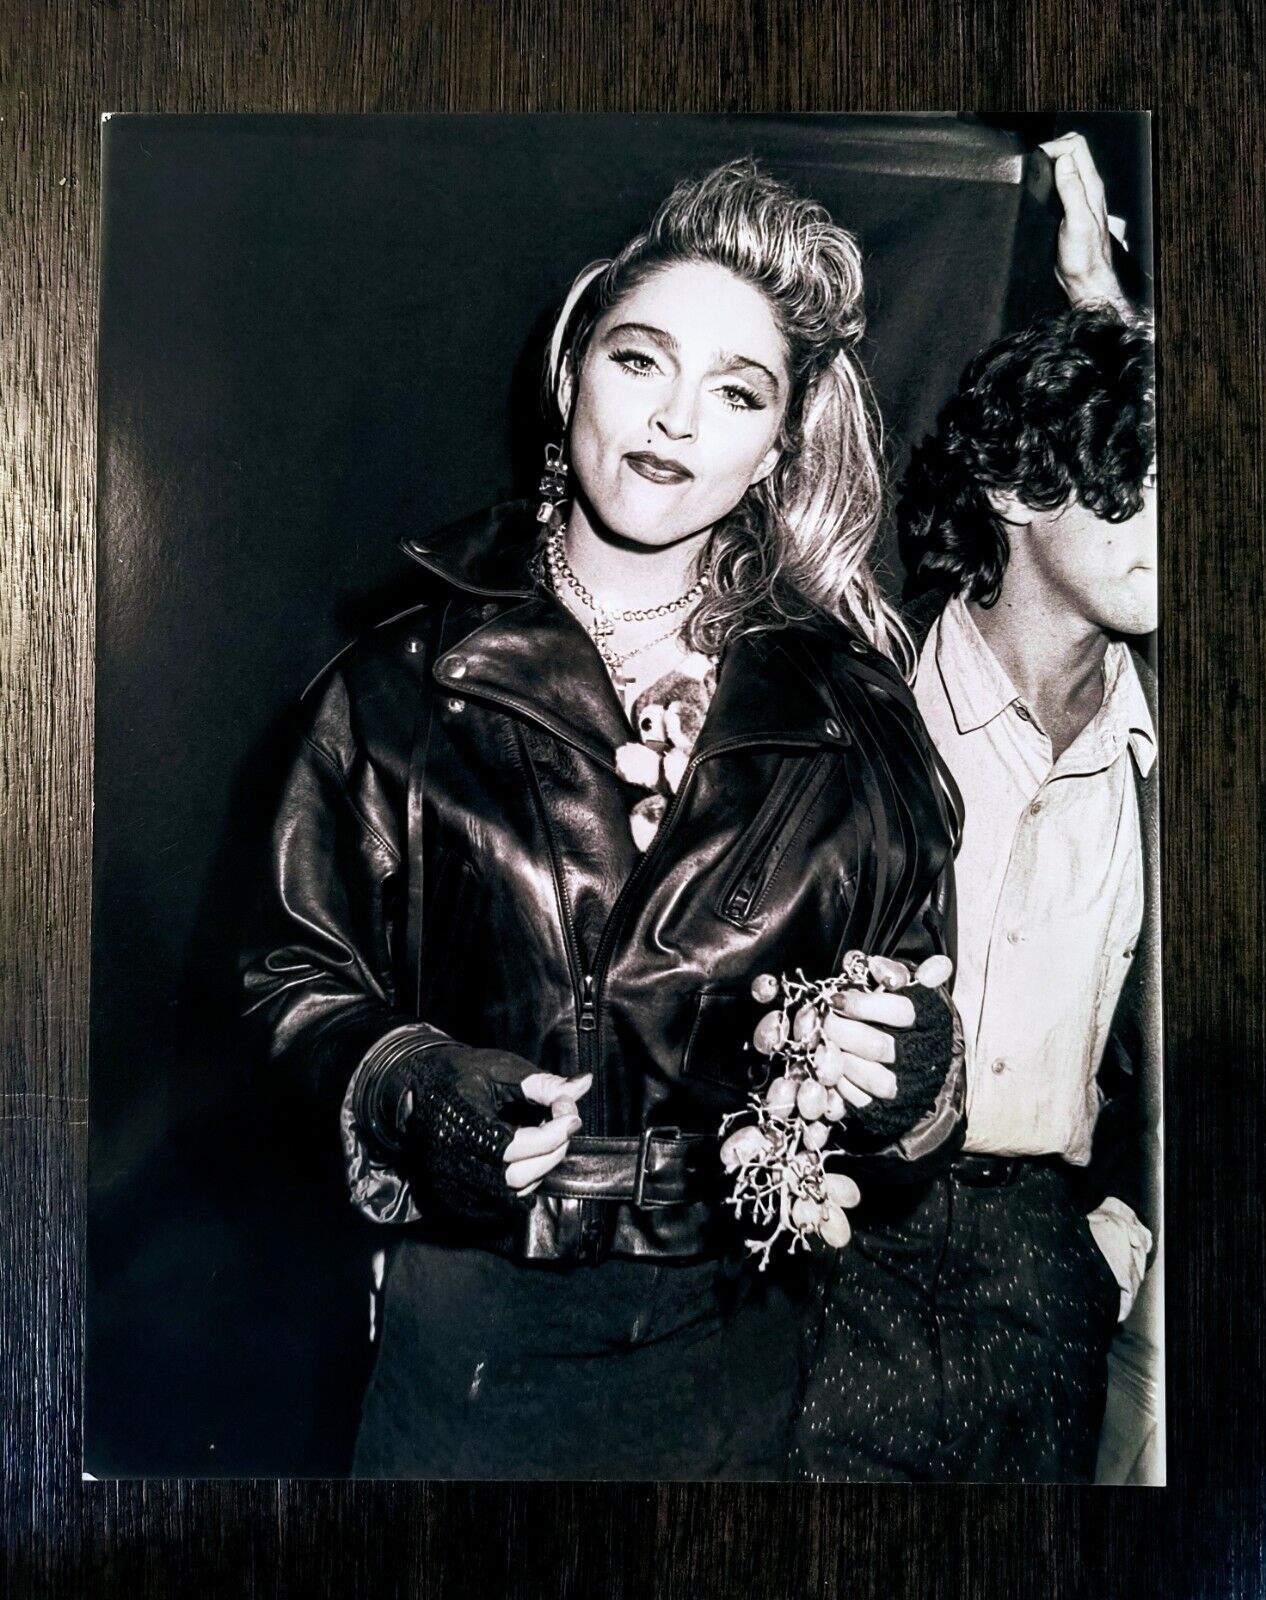 1985 Madonna "virgin Tour" Type 1 Original Photo